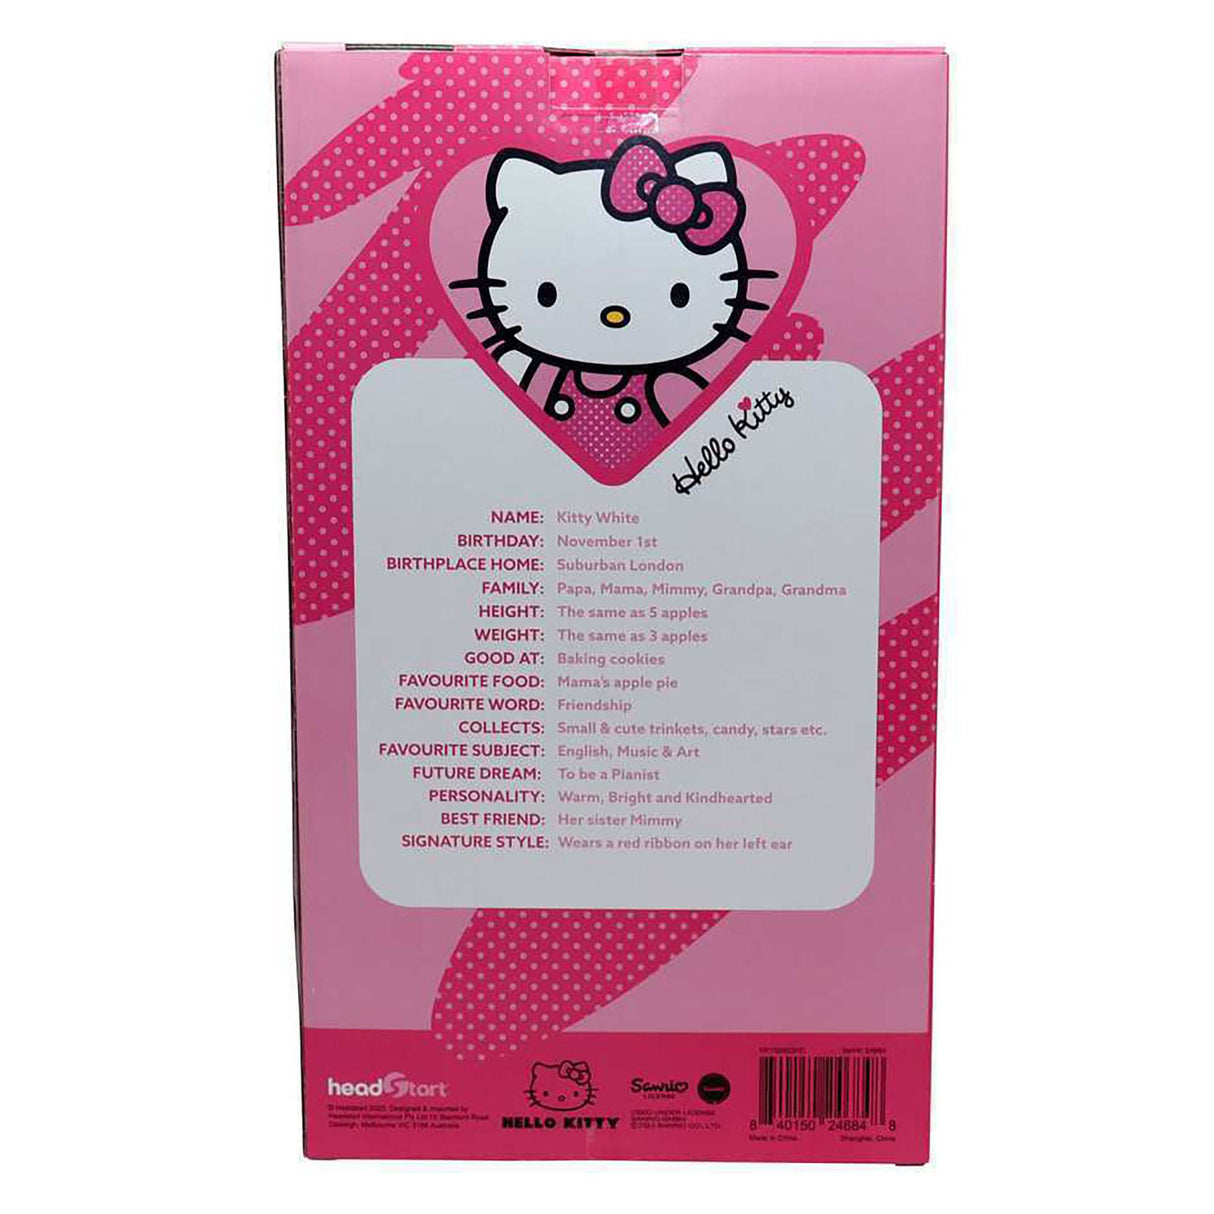 Hello Kitty Plush, Pink (Medium)